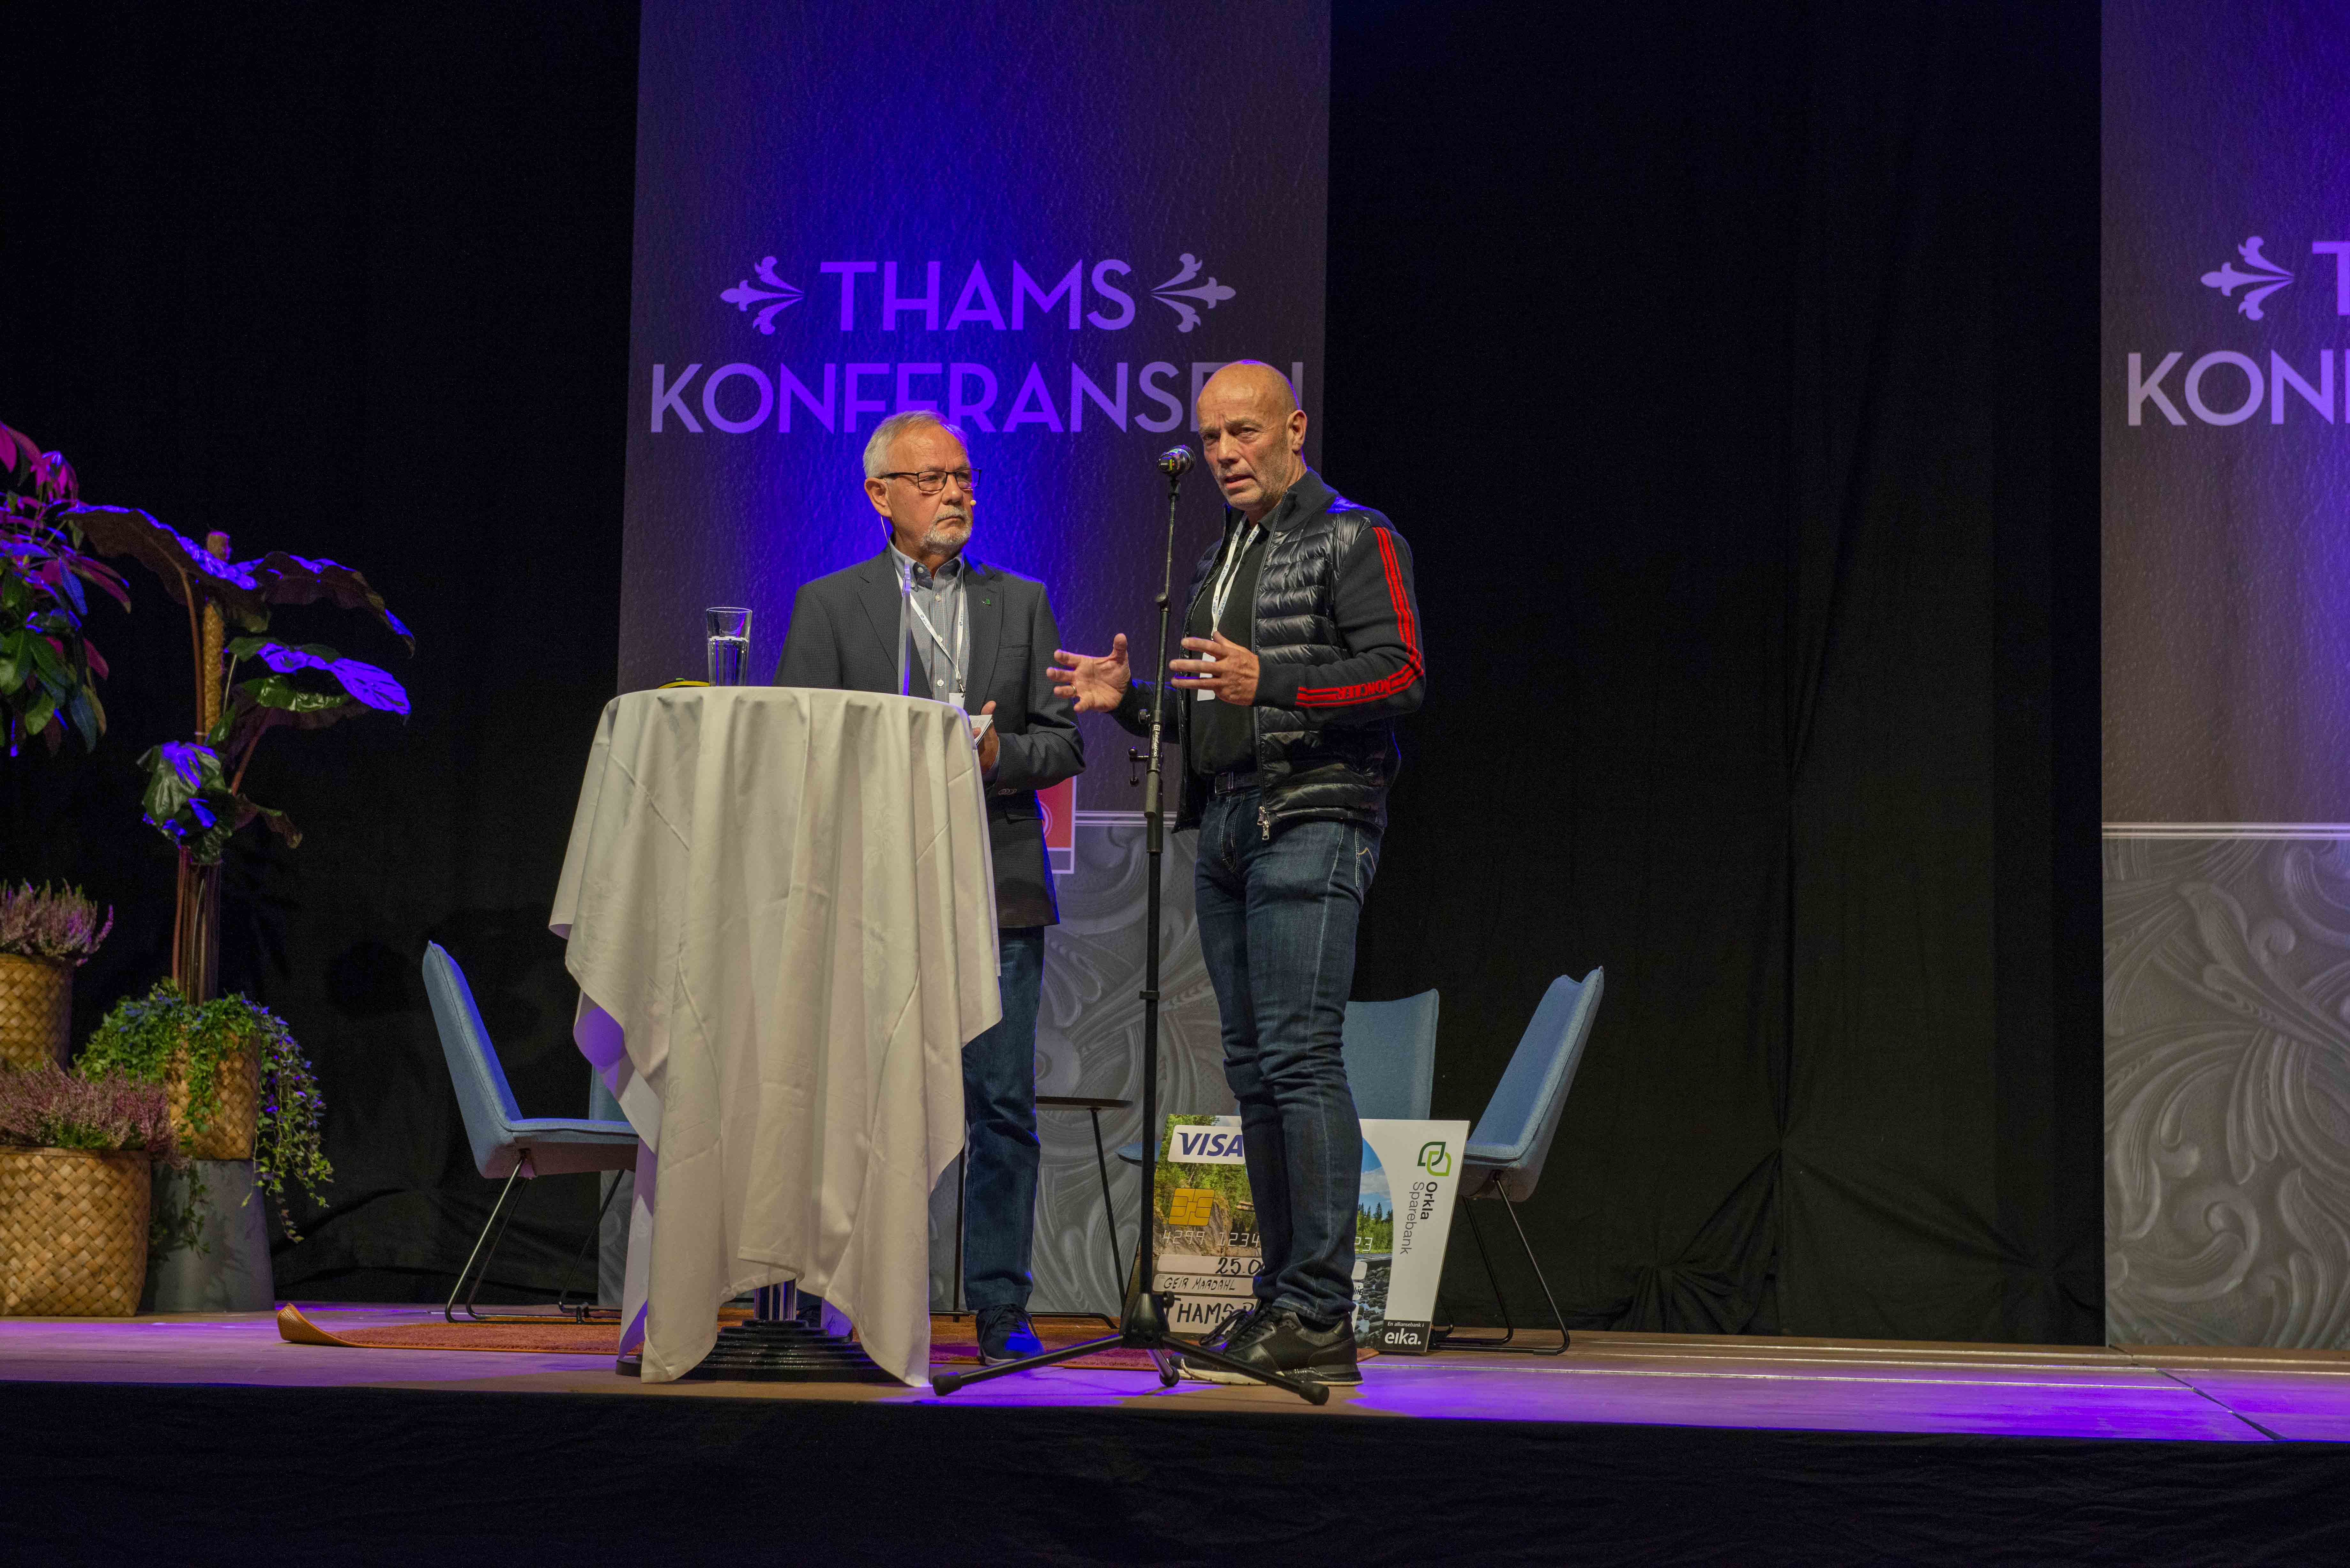 Årets vinner av Thamsprisen - Geir Mardahl